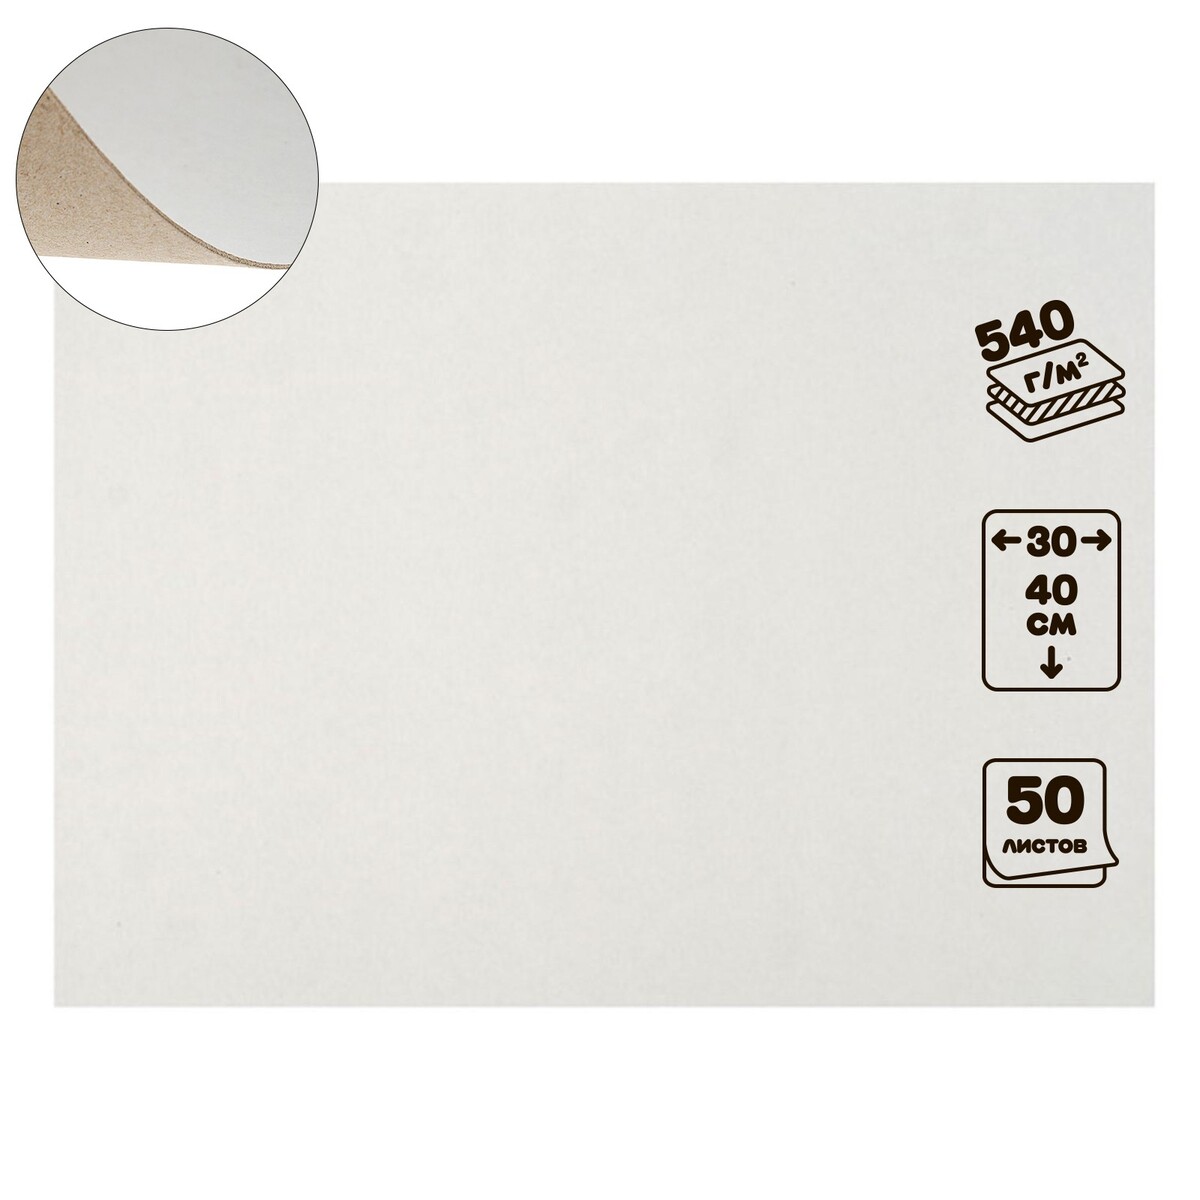 Картон переплетный 0.9 мм, 30 х 40 см, 50 листов, 540 г/м², белый картон белый двухсторонний а4 10 листов мульти пульти